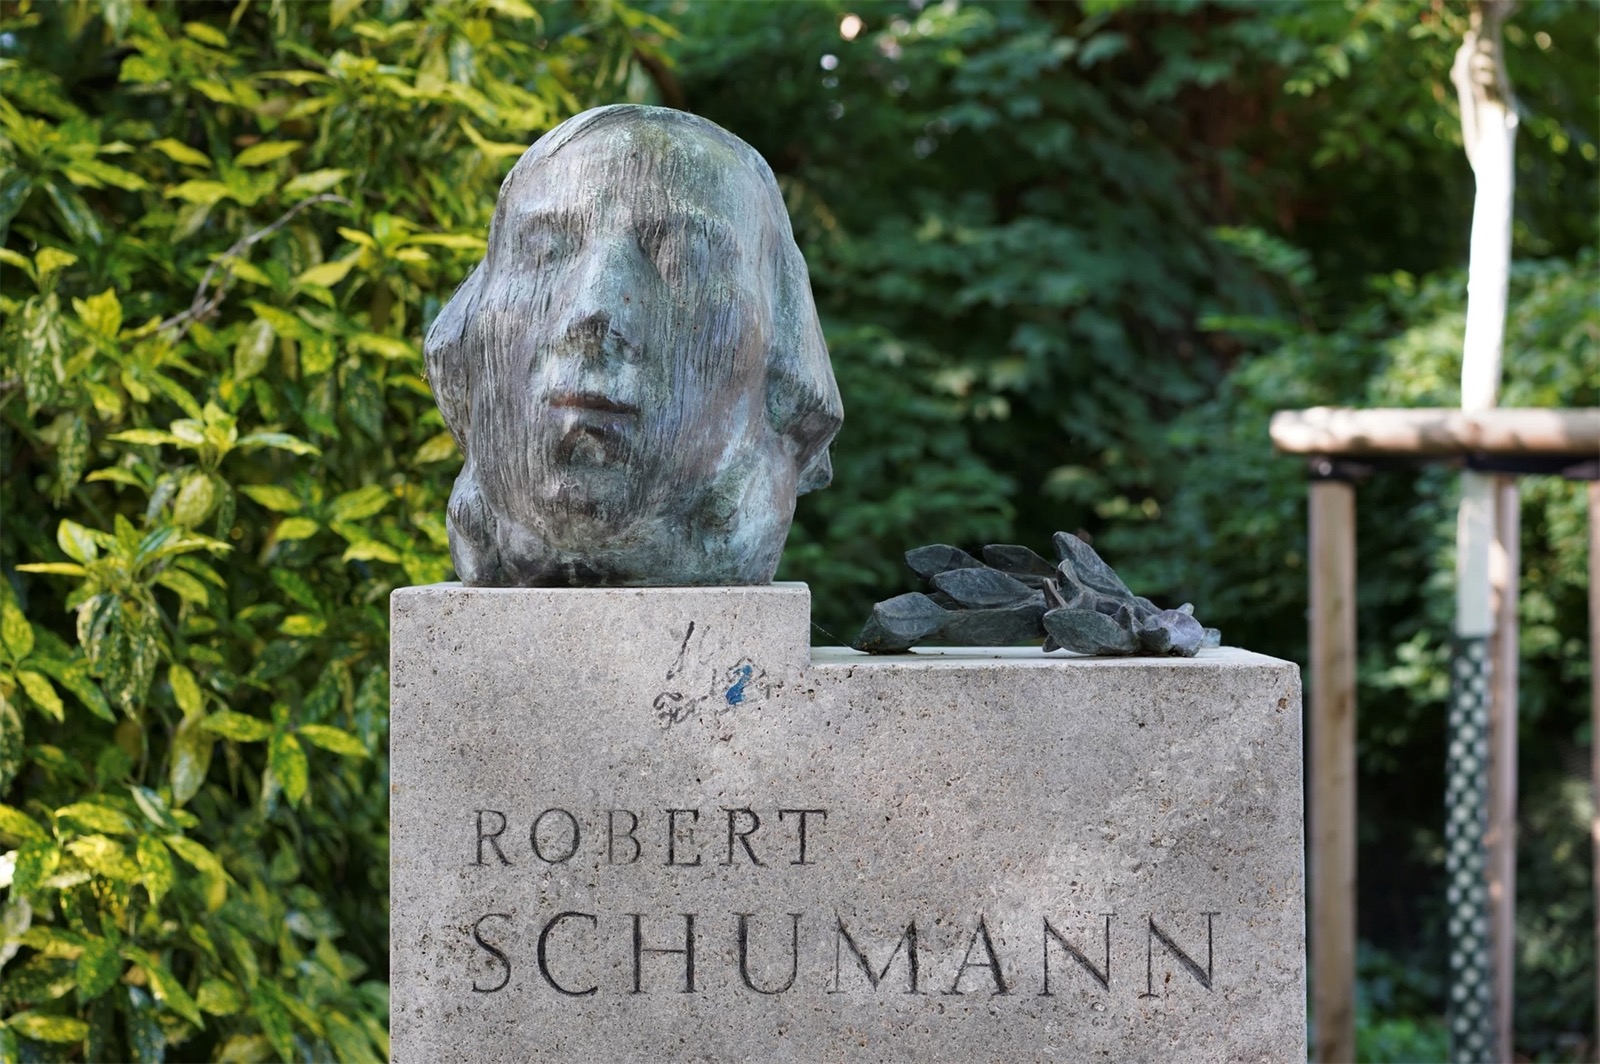 Karl Hartung. ”Robert Schumann-Denkmal”. 1956 - Image 2 of 2